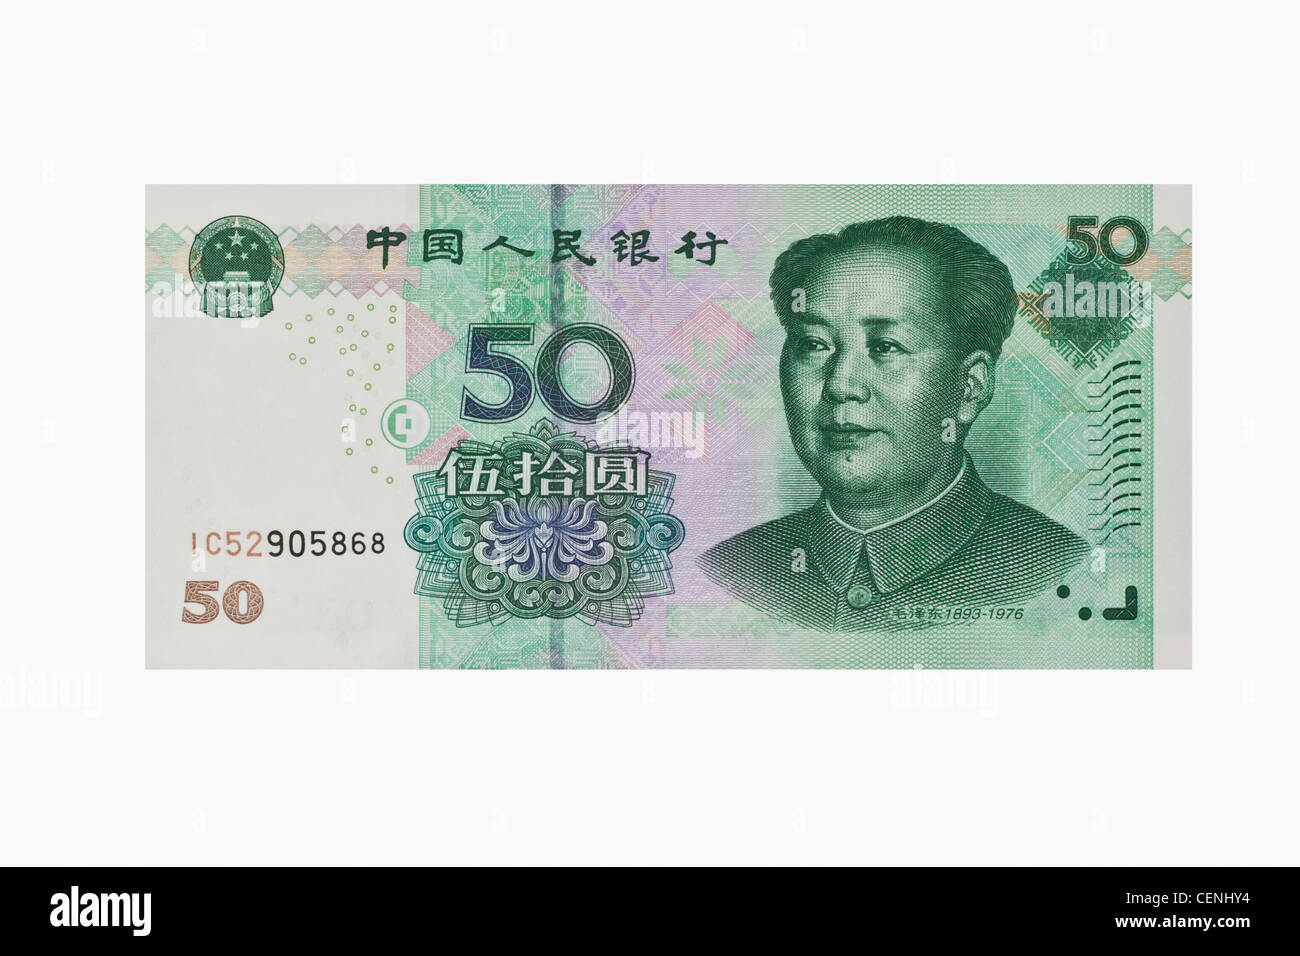 50 yuan bill con il ritratto di Mao Zedong. Il renminbi, la valuta cinese, è stato introdotto nel 1949. Foto Stock